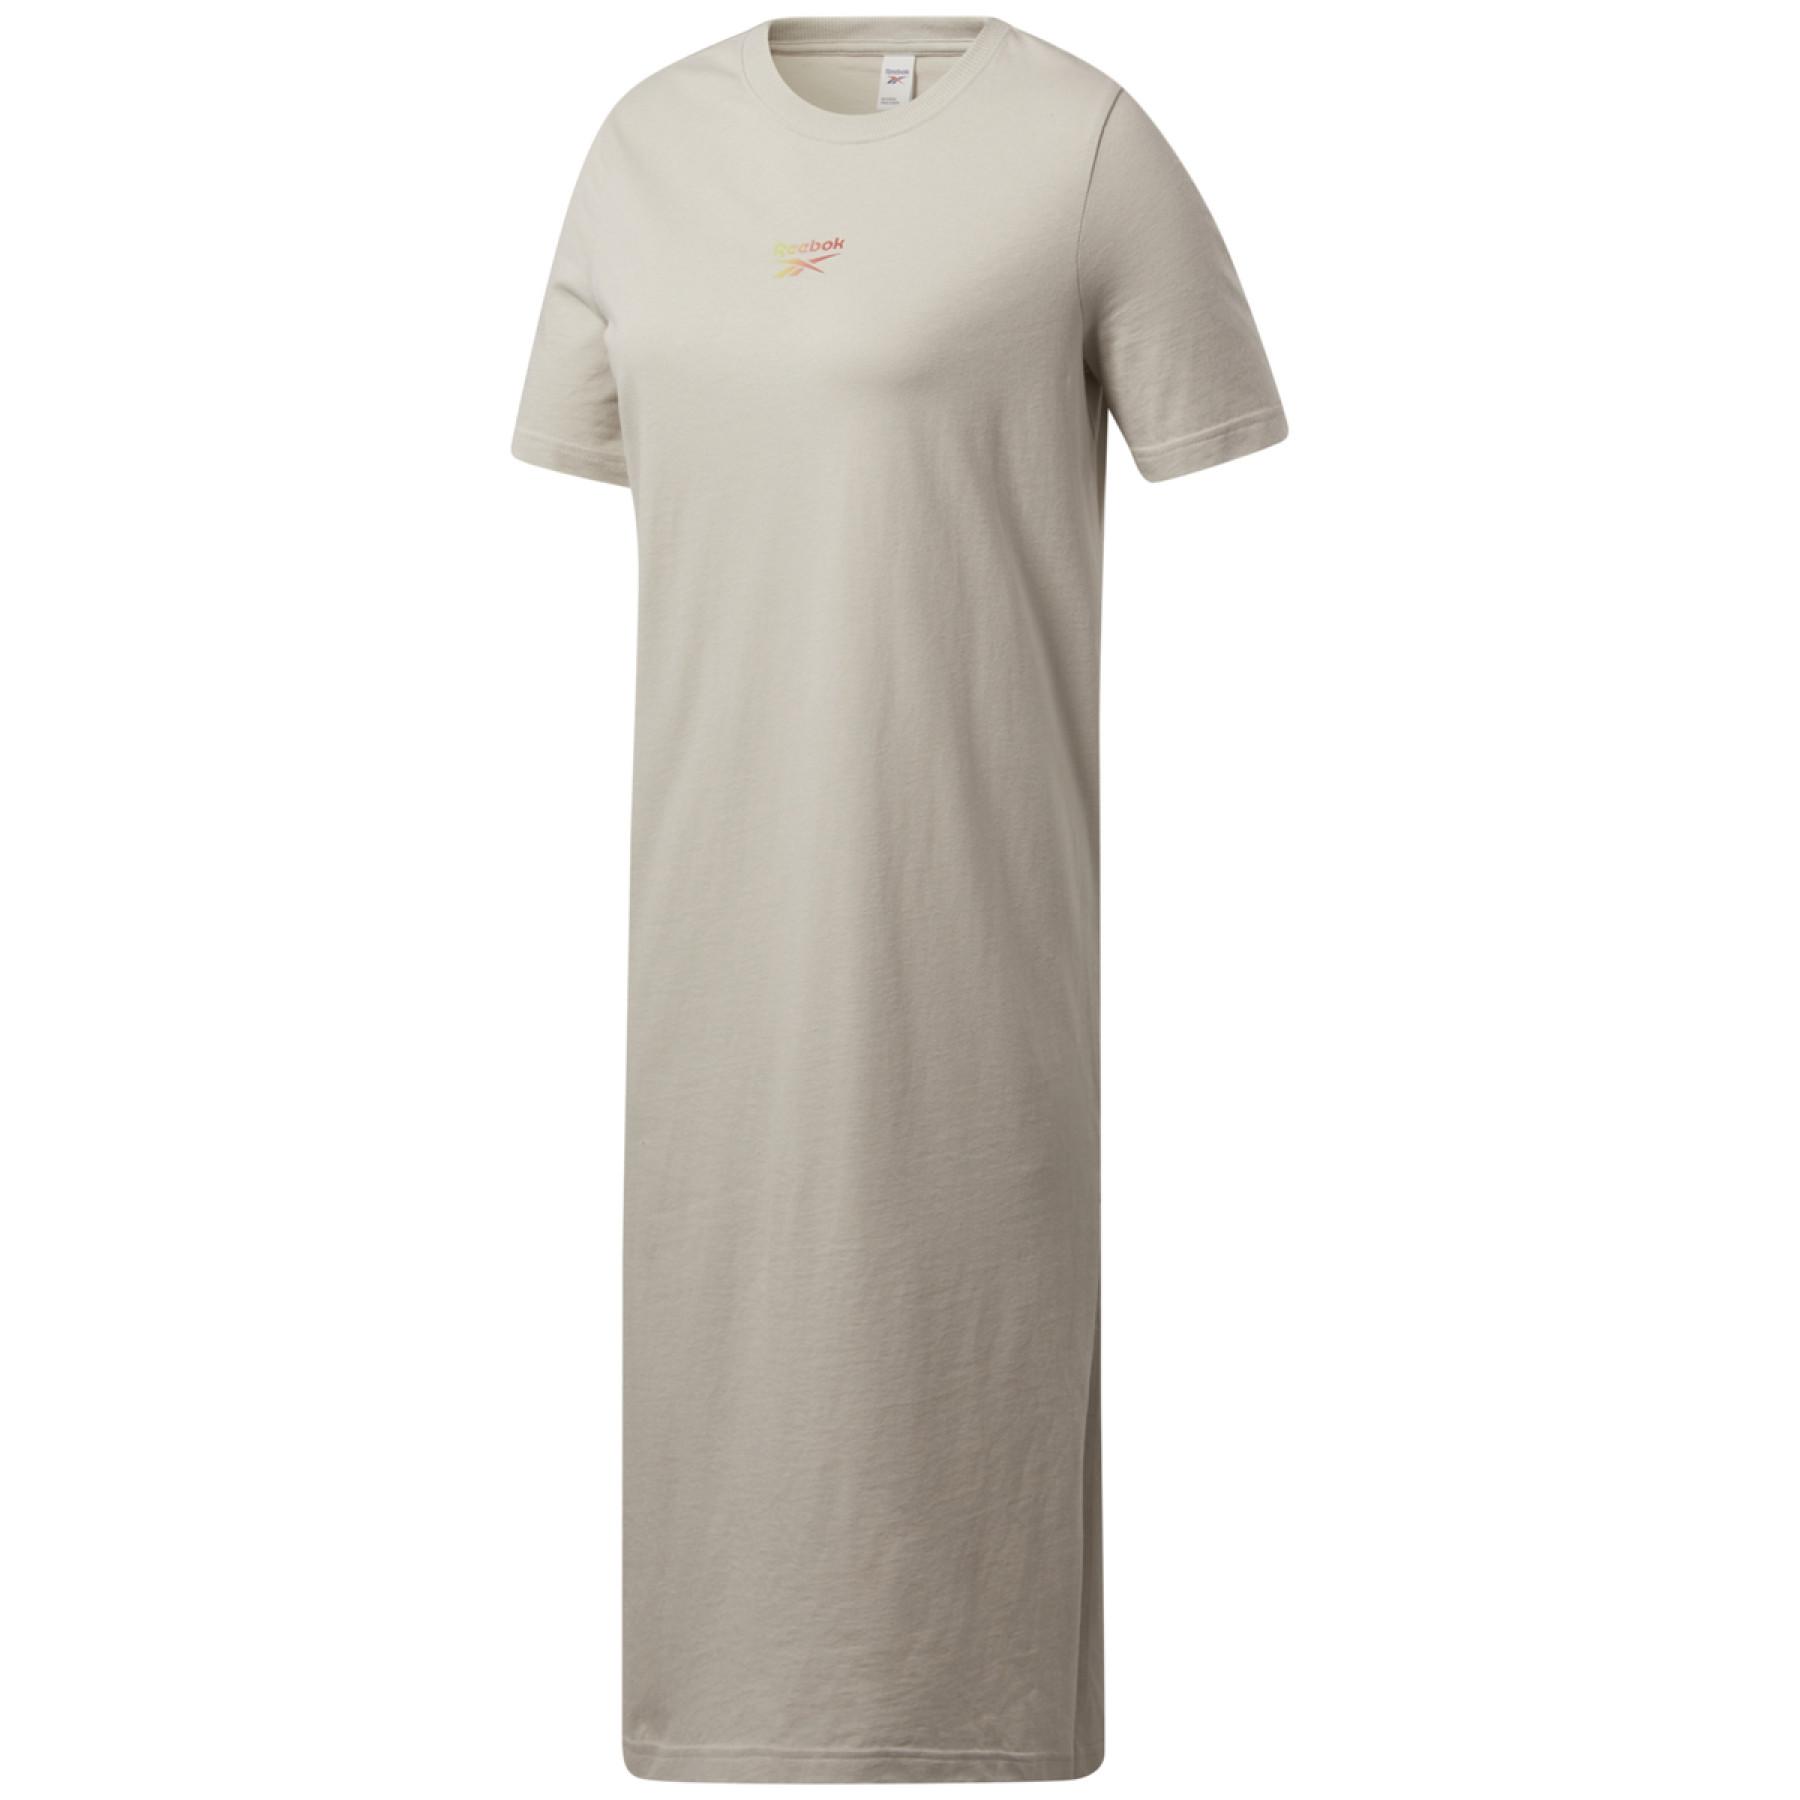 Women's T-shirt dress Reebok Classics Wardrobe Essentials